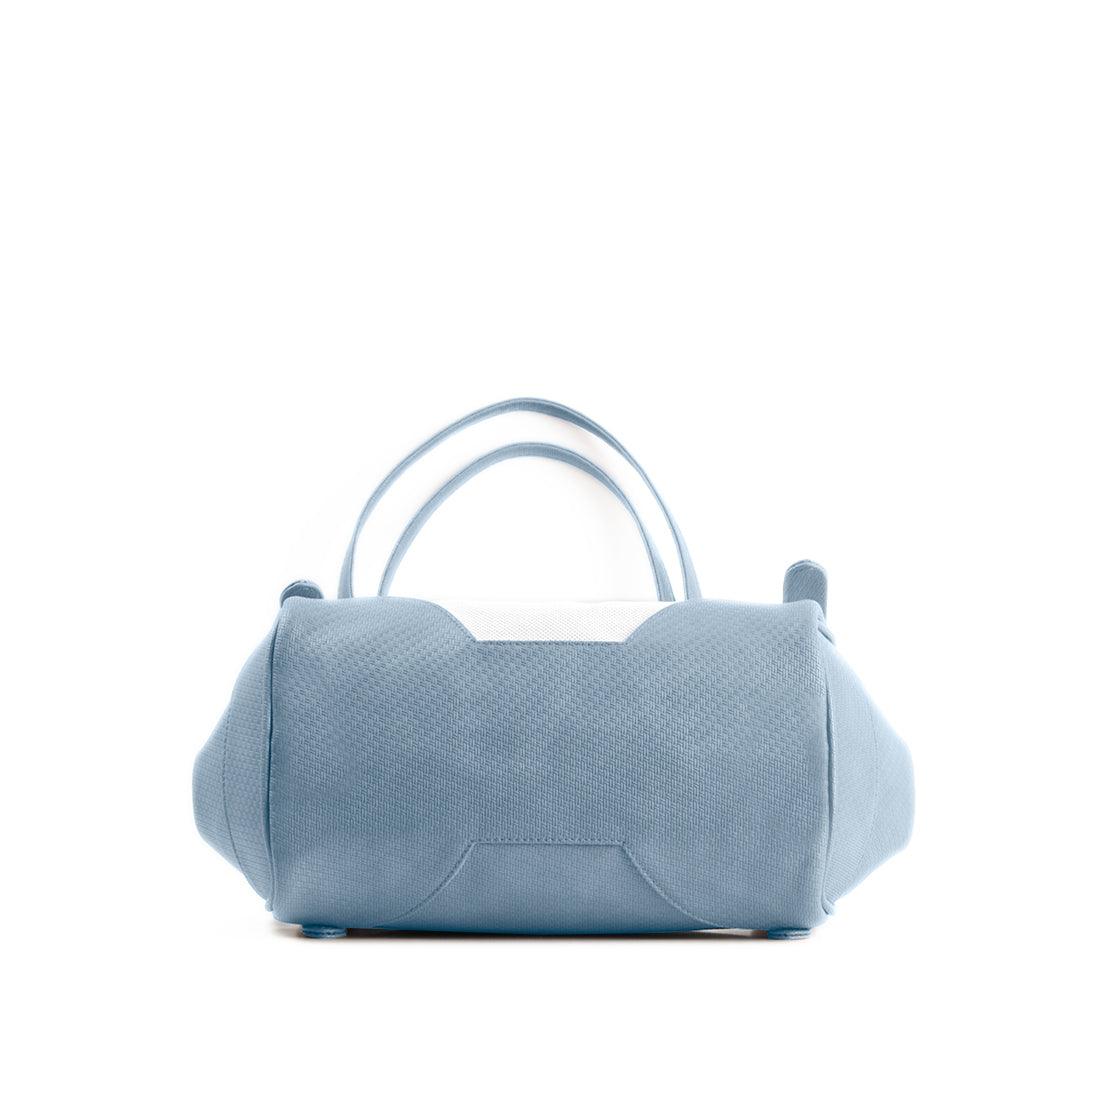 Blue Leather Tote Bag Doggo - CANVAEGYPT